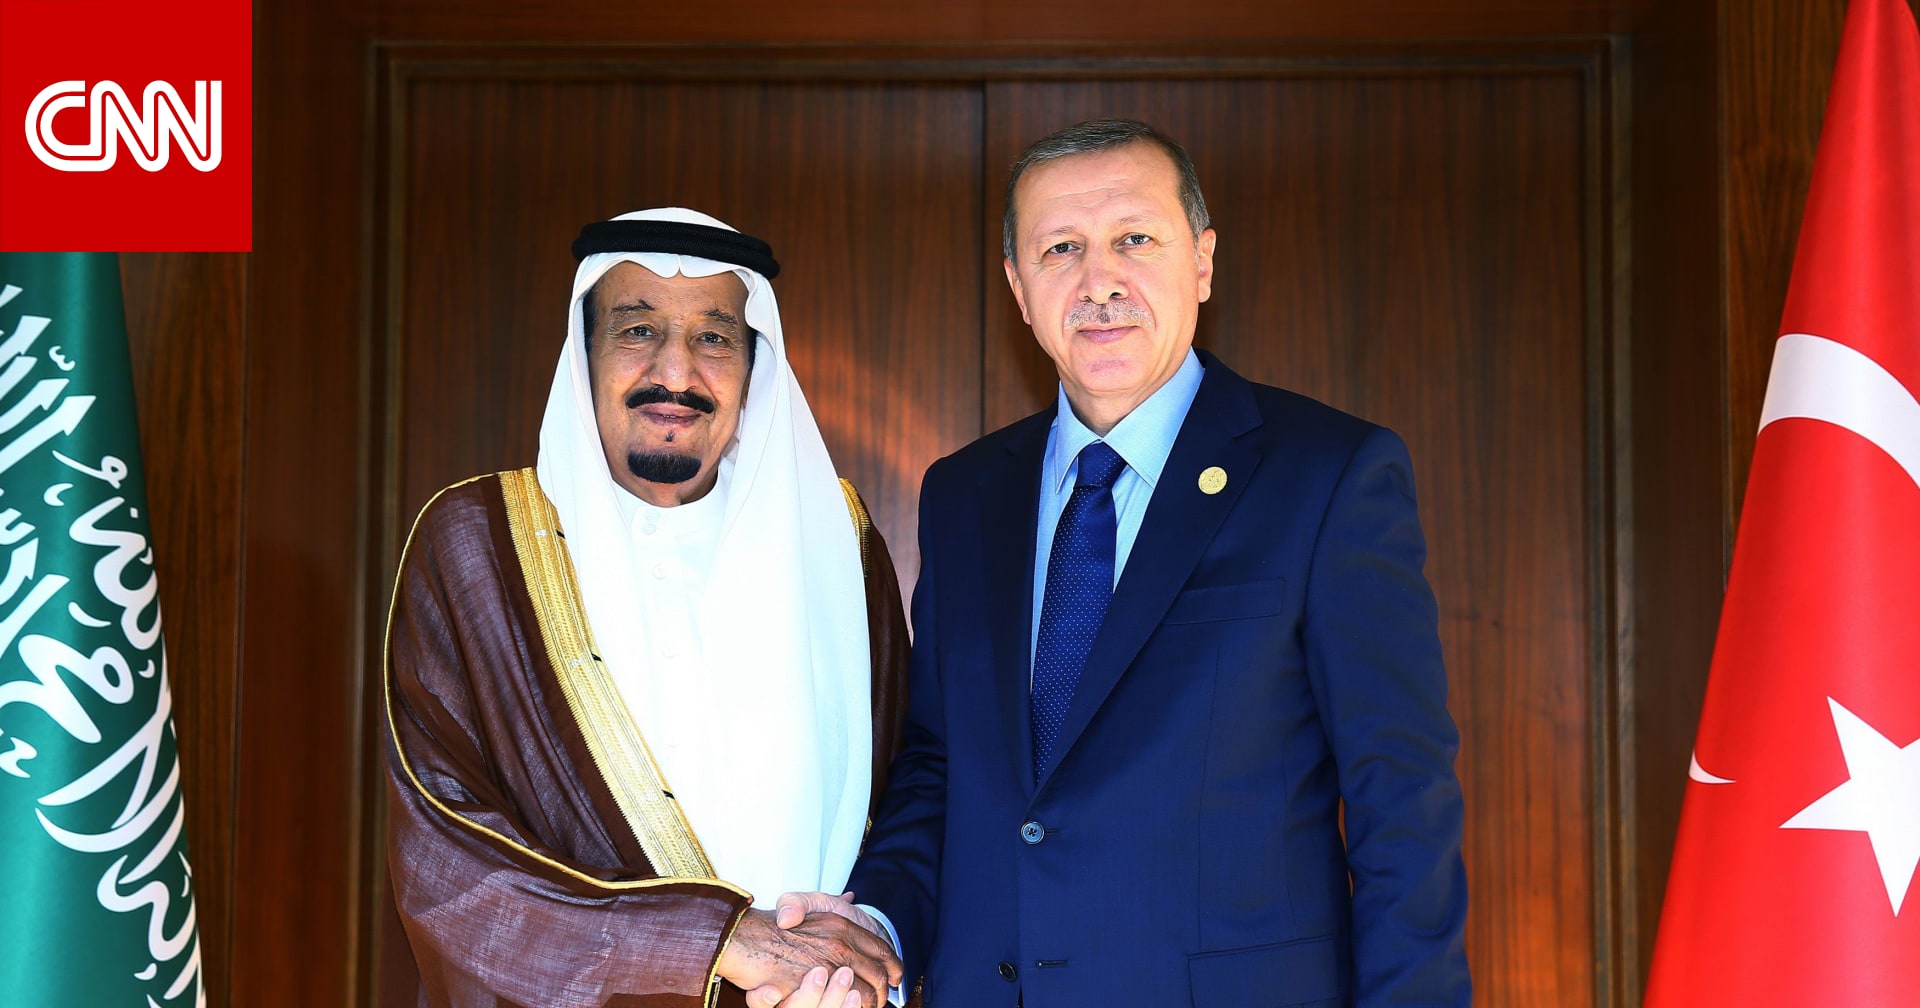 عاجل الرعب يعطل الحياة في السعودية  على وكالة أنباء تركيا يثير تفاعلا.. ومغردون يقارنون الملك سلمان وأردوغان - CNN Arabic